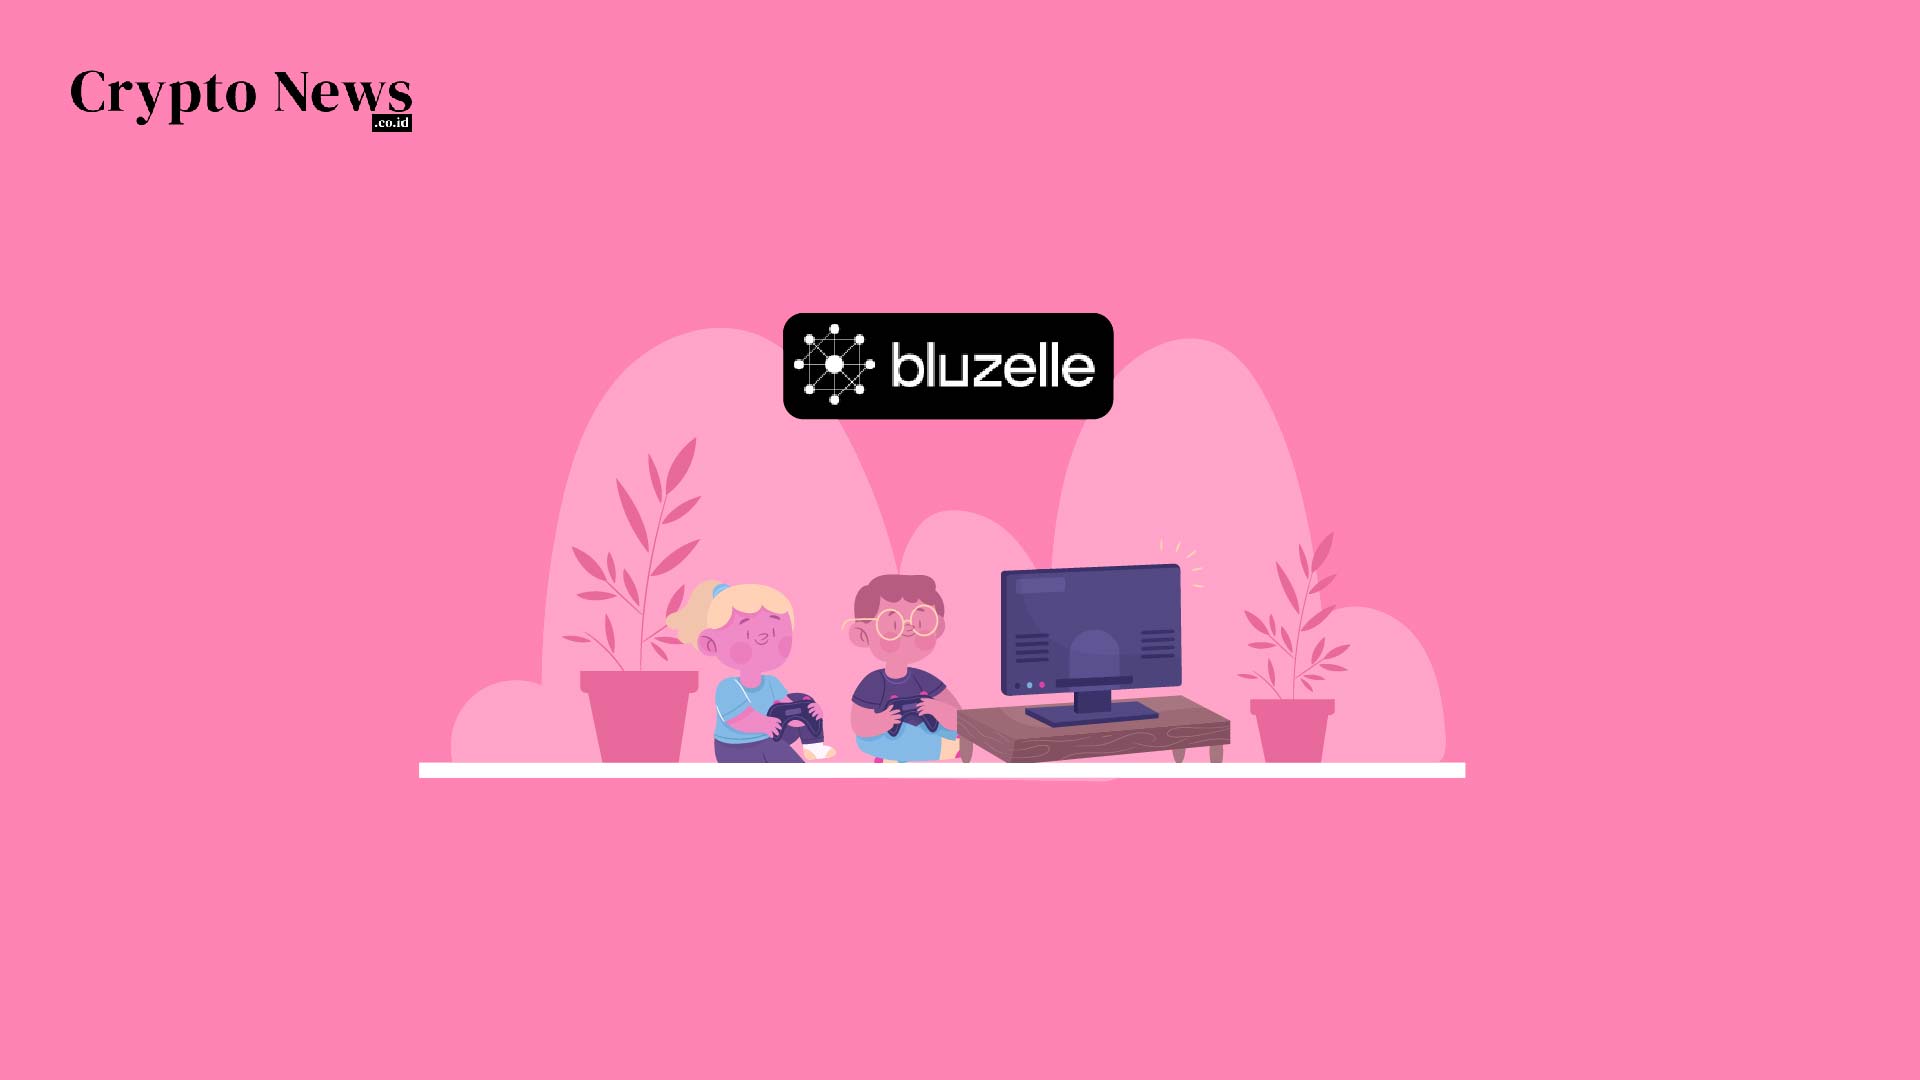 Illust : Bluzelle, Platform GameFi yang Menyimpan Data Secara Tradisional dan Menjamin Kemanan dengan Teknologi Blockchain